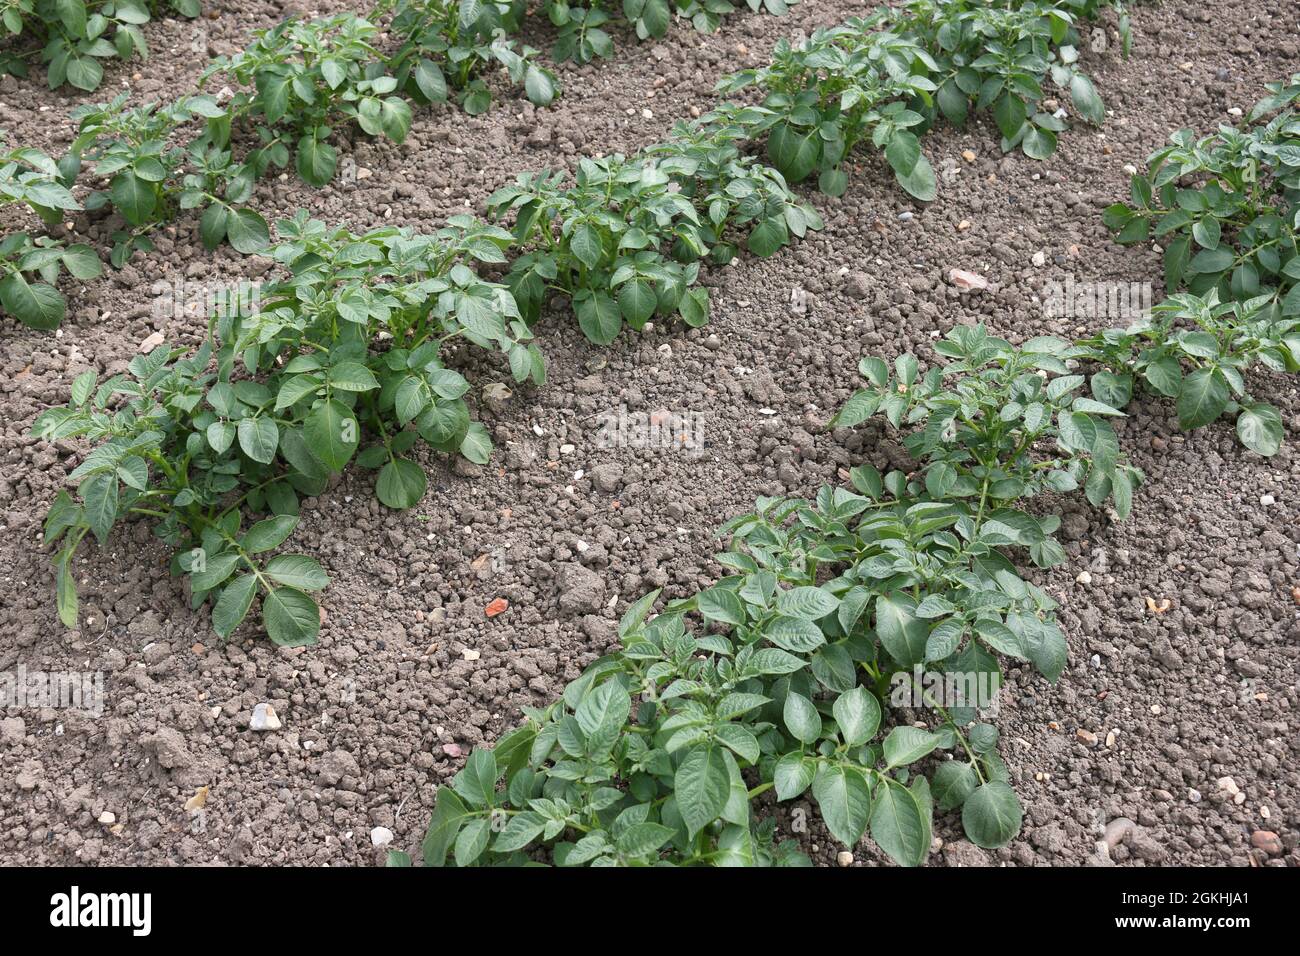 Rangées de pommes de terre, Solanum tuberosum de variété inconnue, poussant dans un potager avec un sol sans mauvaises herbes bien cultivé comme fond. Banque D'Images